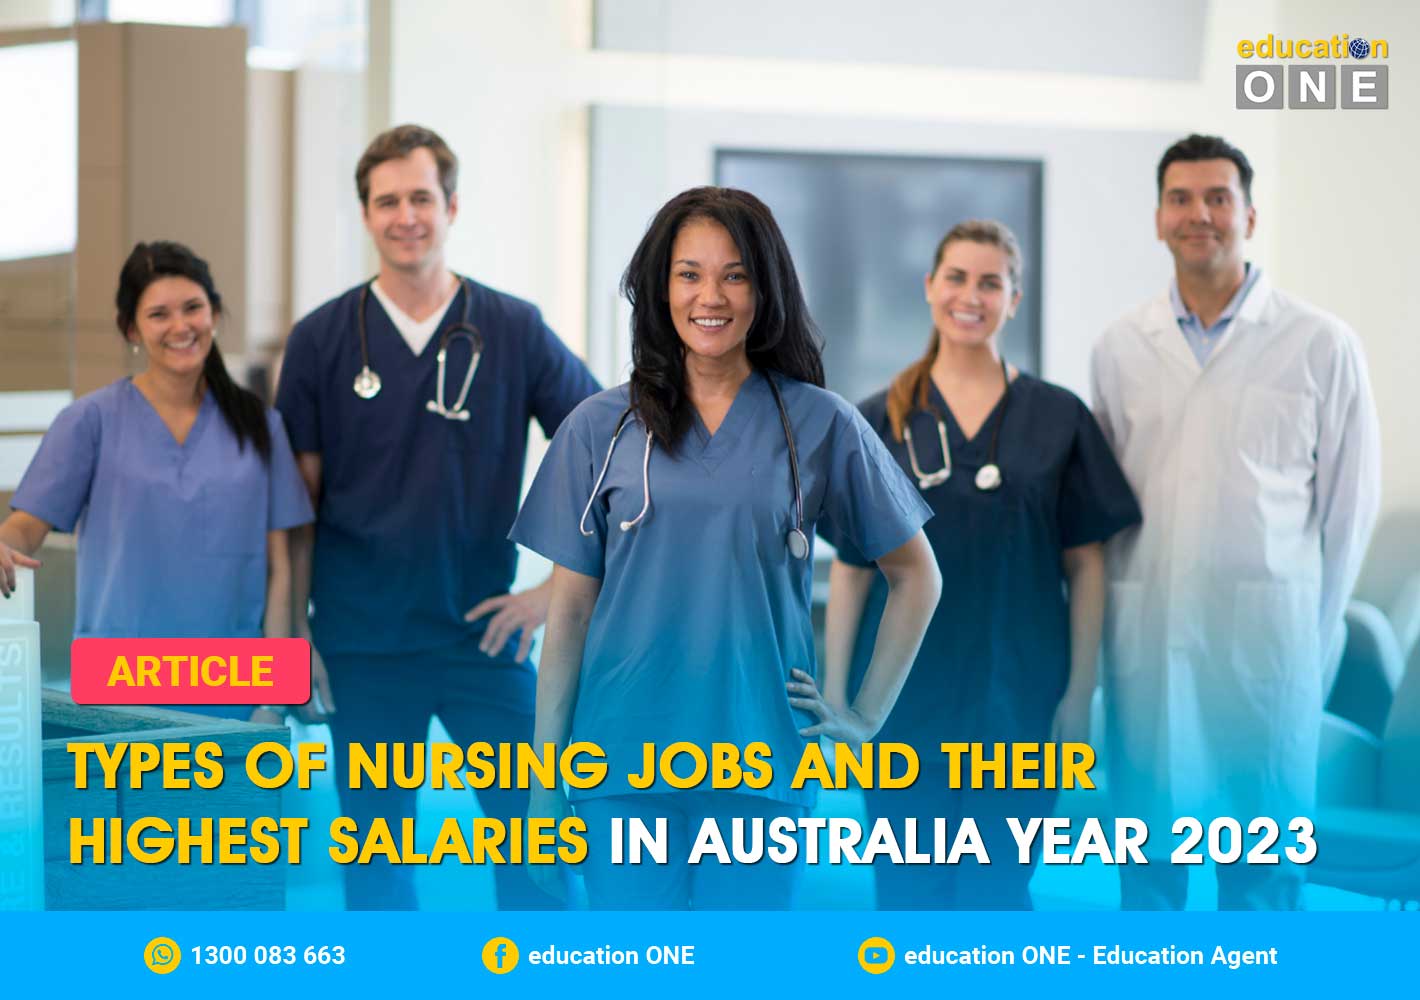 phd in nursing salary in australia